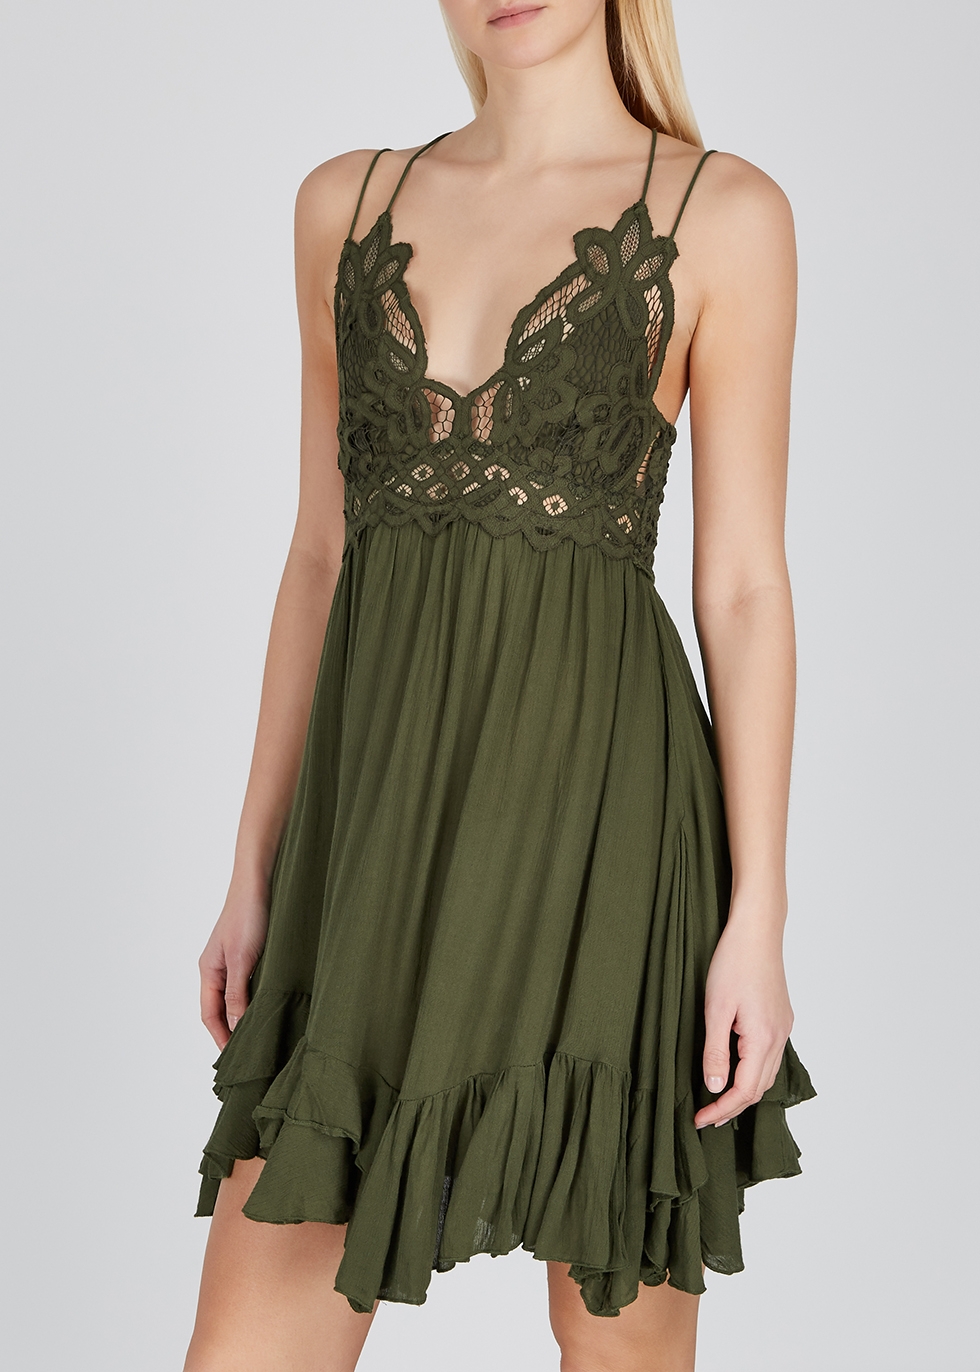 green lace mini dress